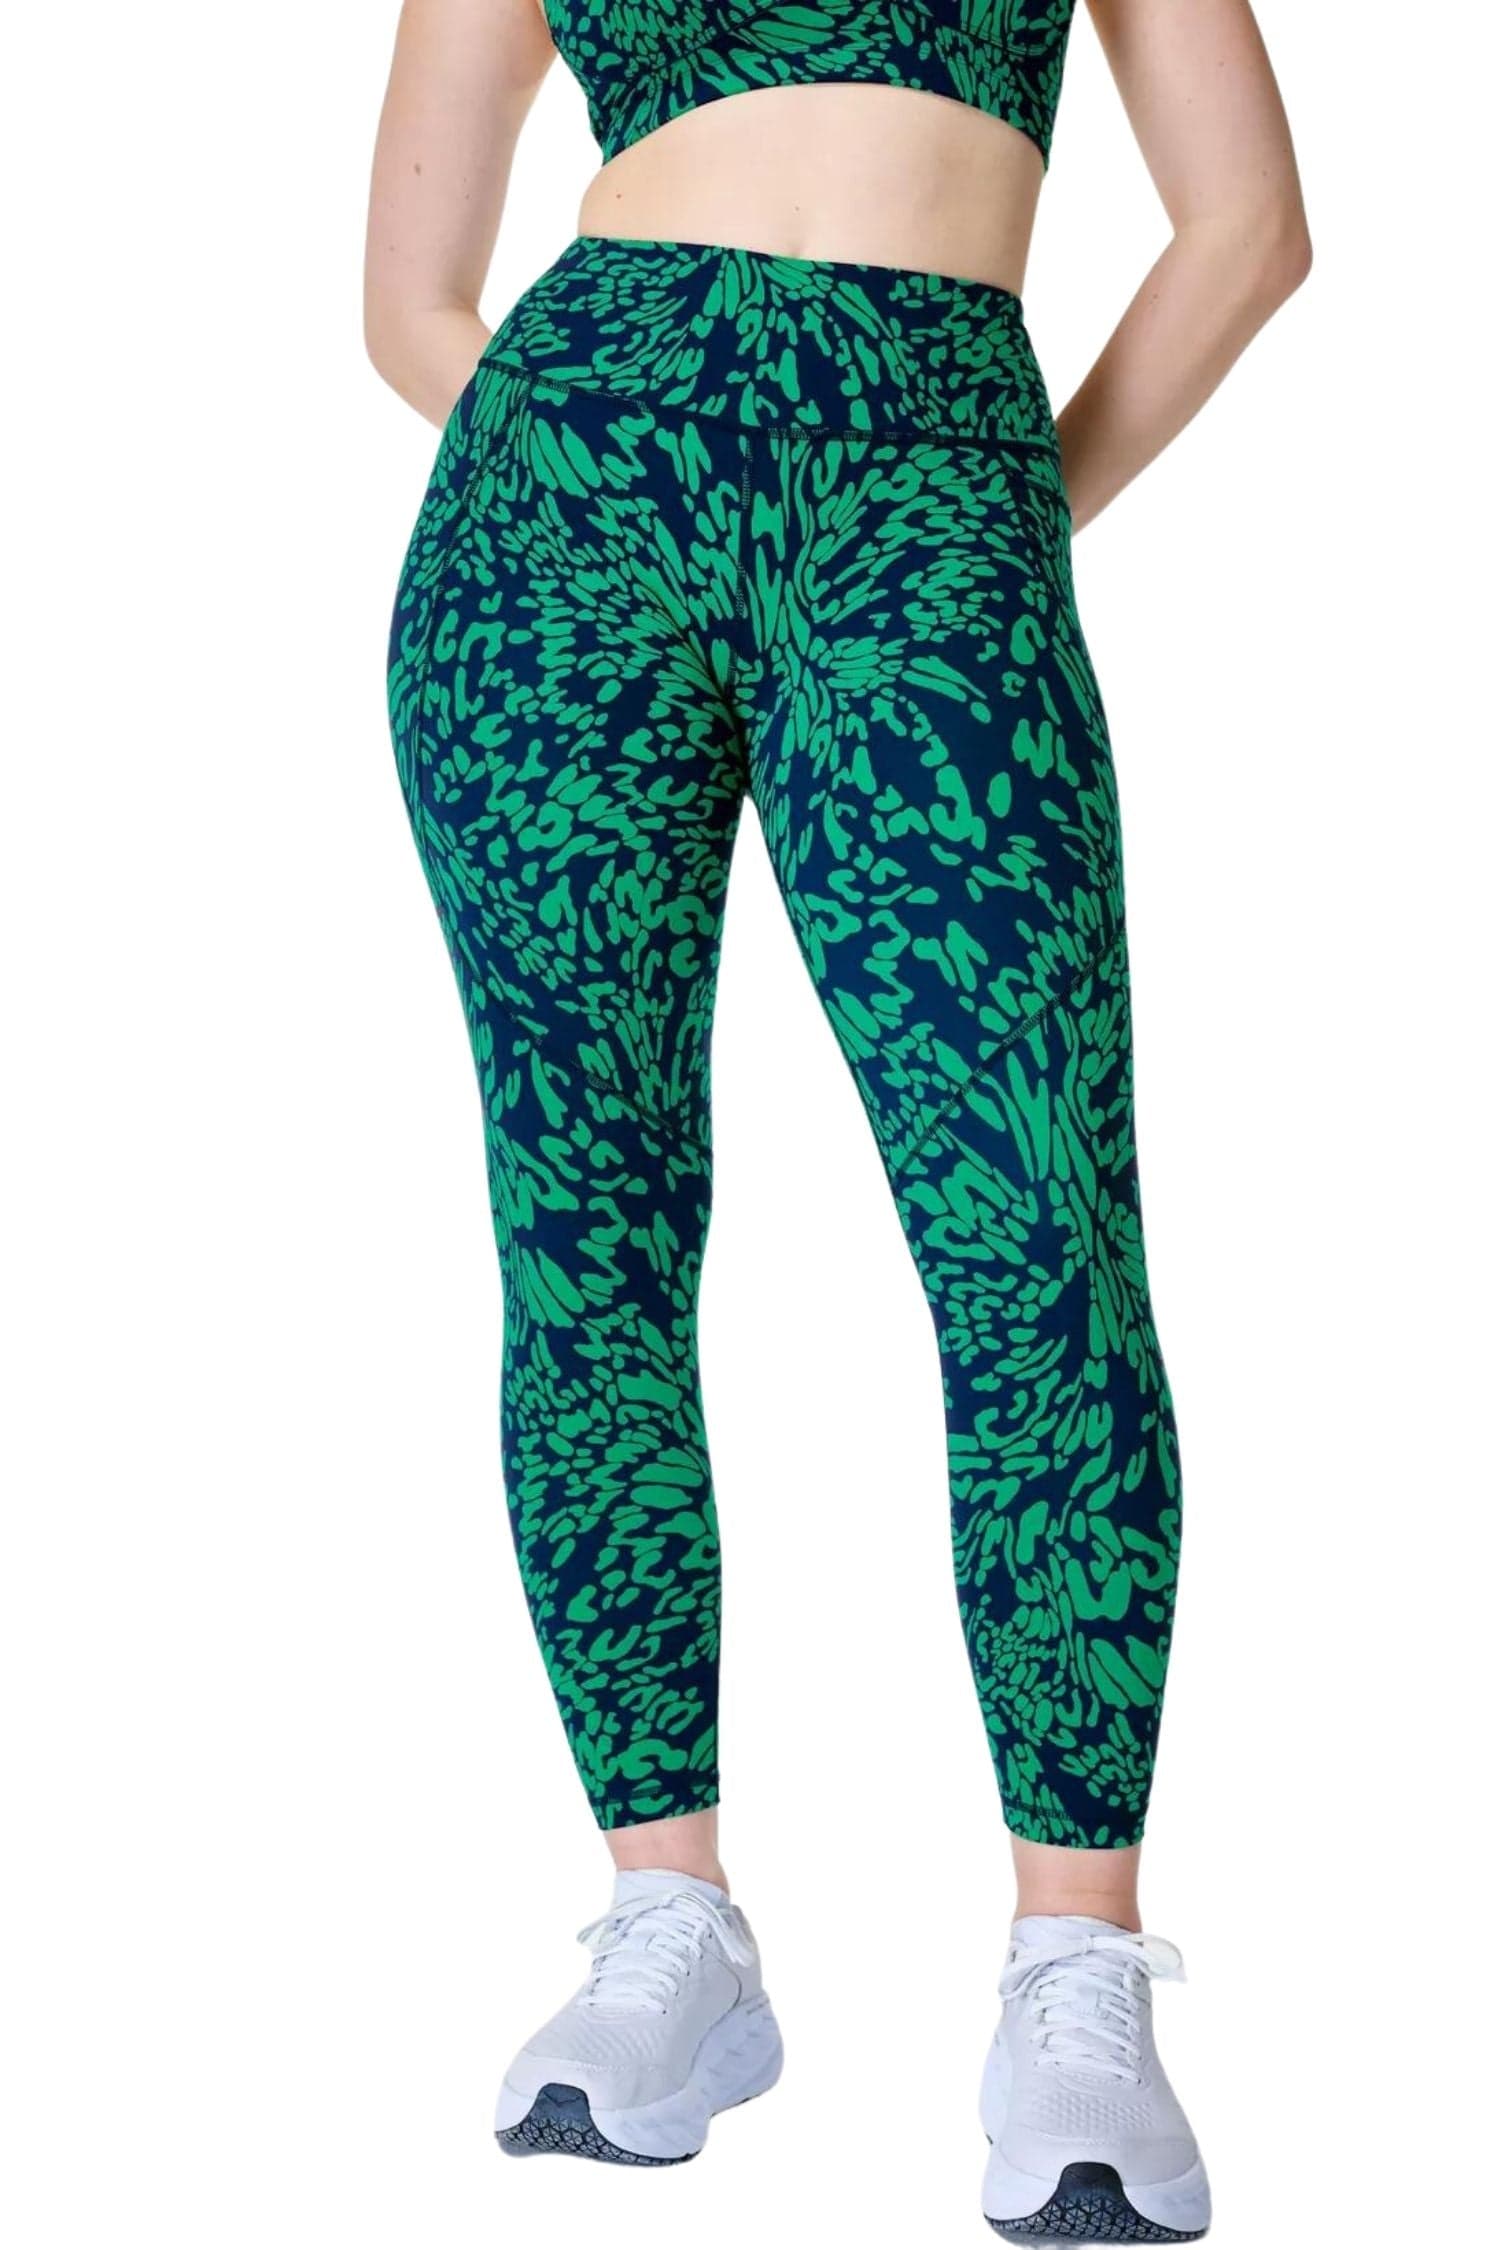 Sweaty Betty Power 7/8 Leggings in Green Leopard Print